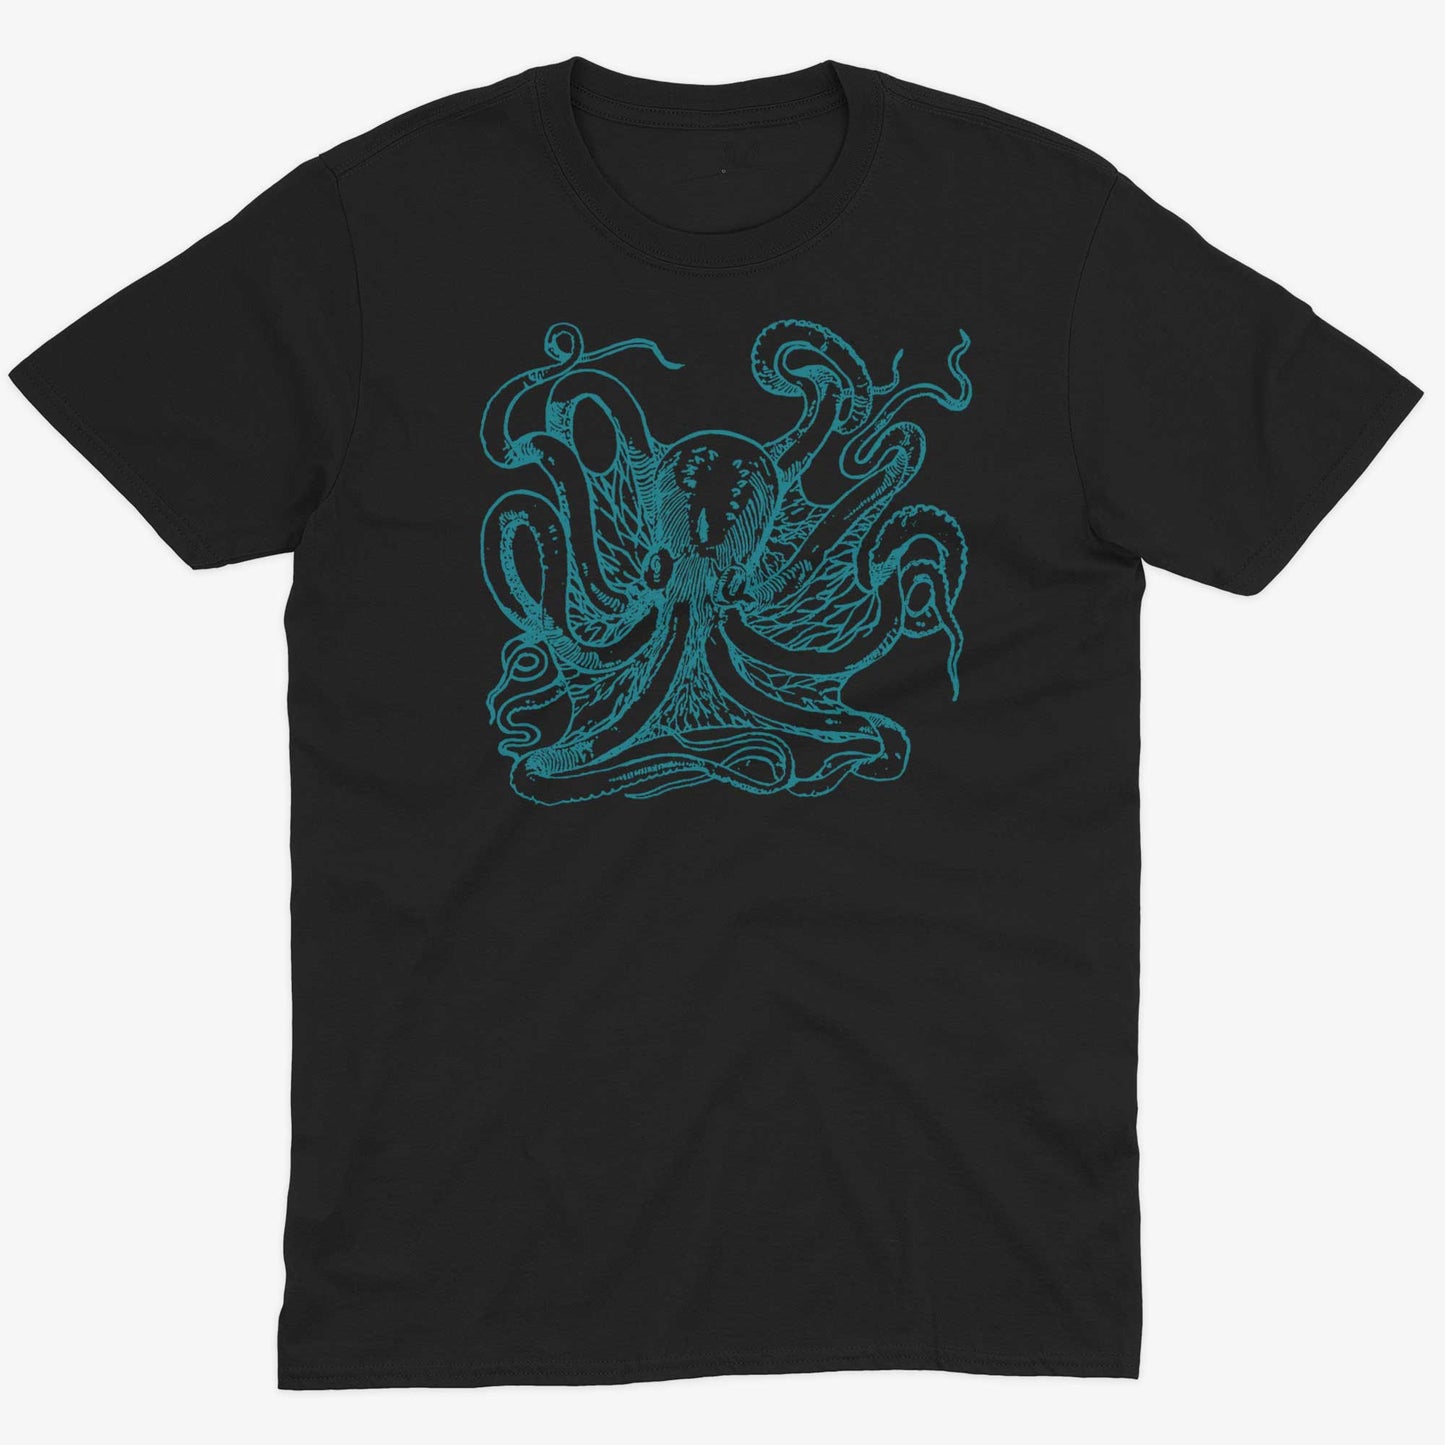 Giant Octopus Unisex Or Women's Cotton T-shirt-Black-Unisex